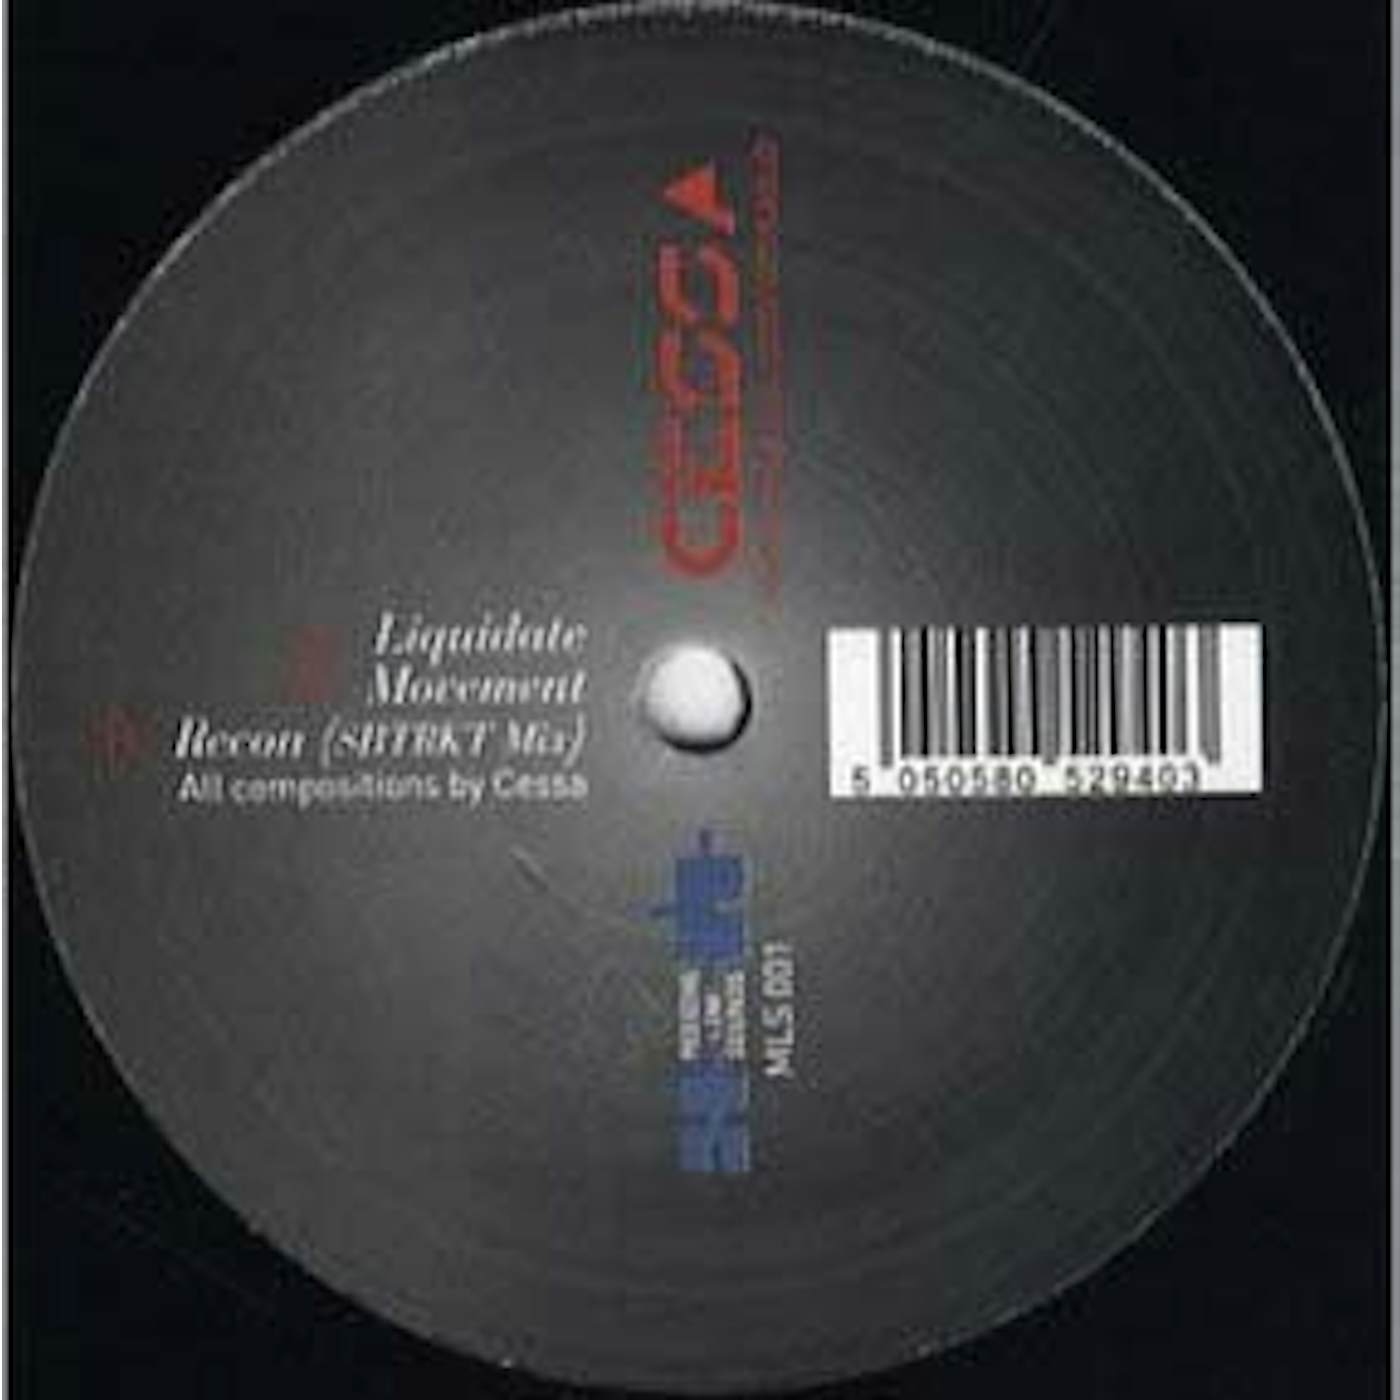 Cessa Liquidate Vinyl Record